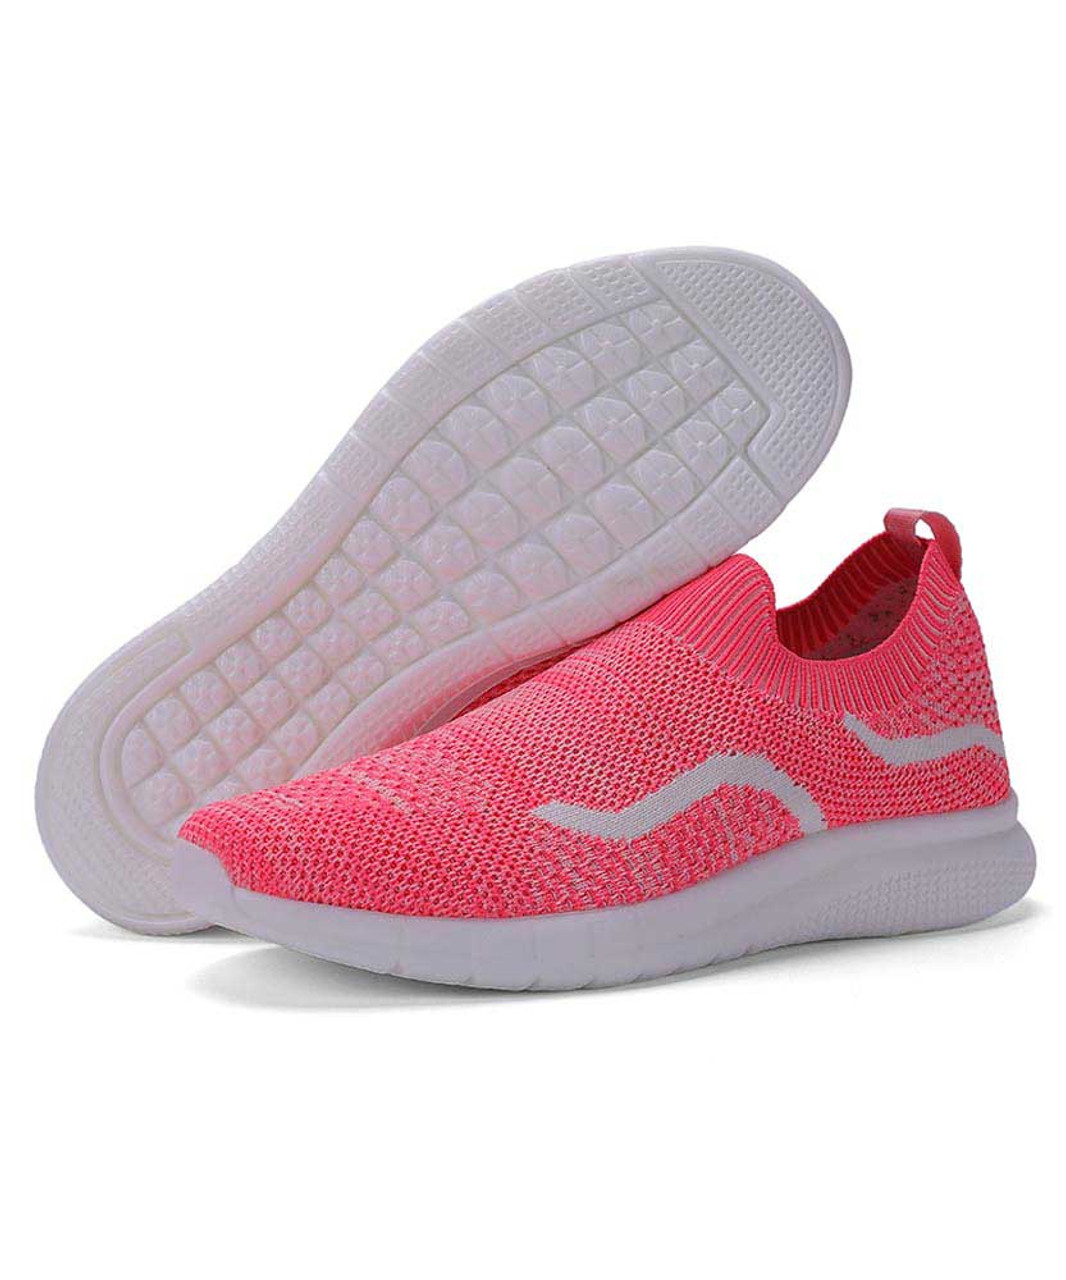 Pink stripe texture sock like entry slip on shoe sneaker | Womens ...